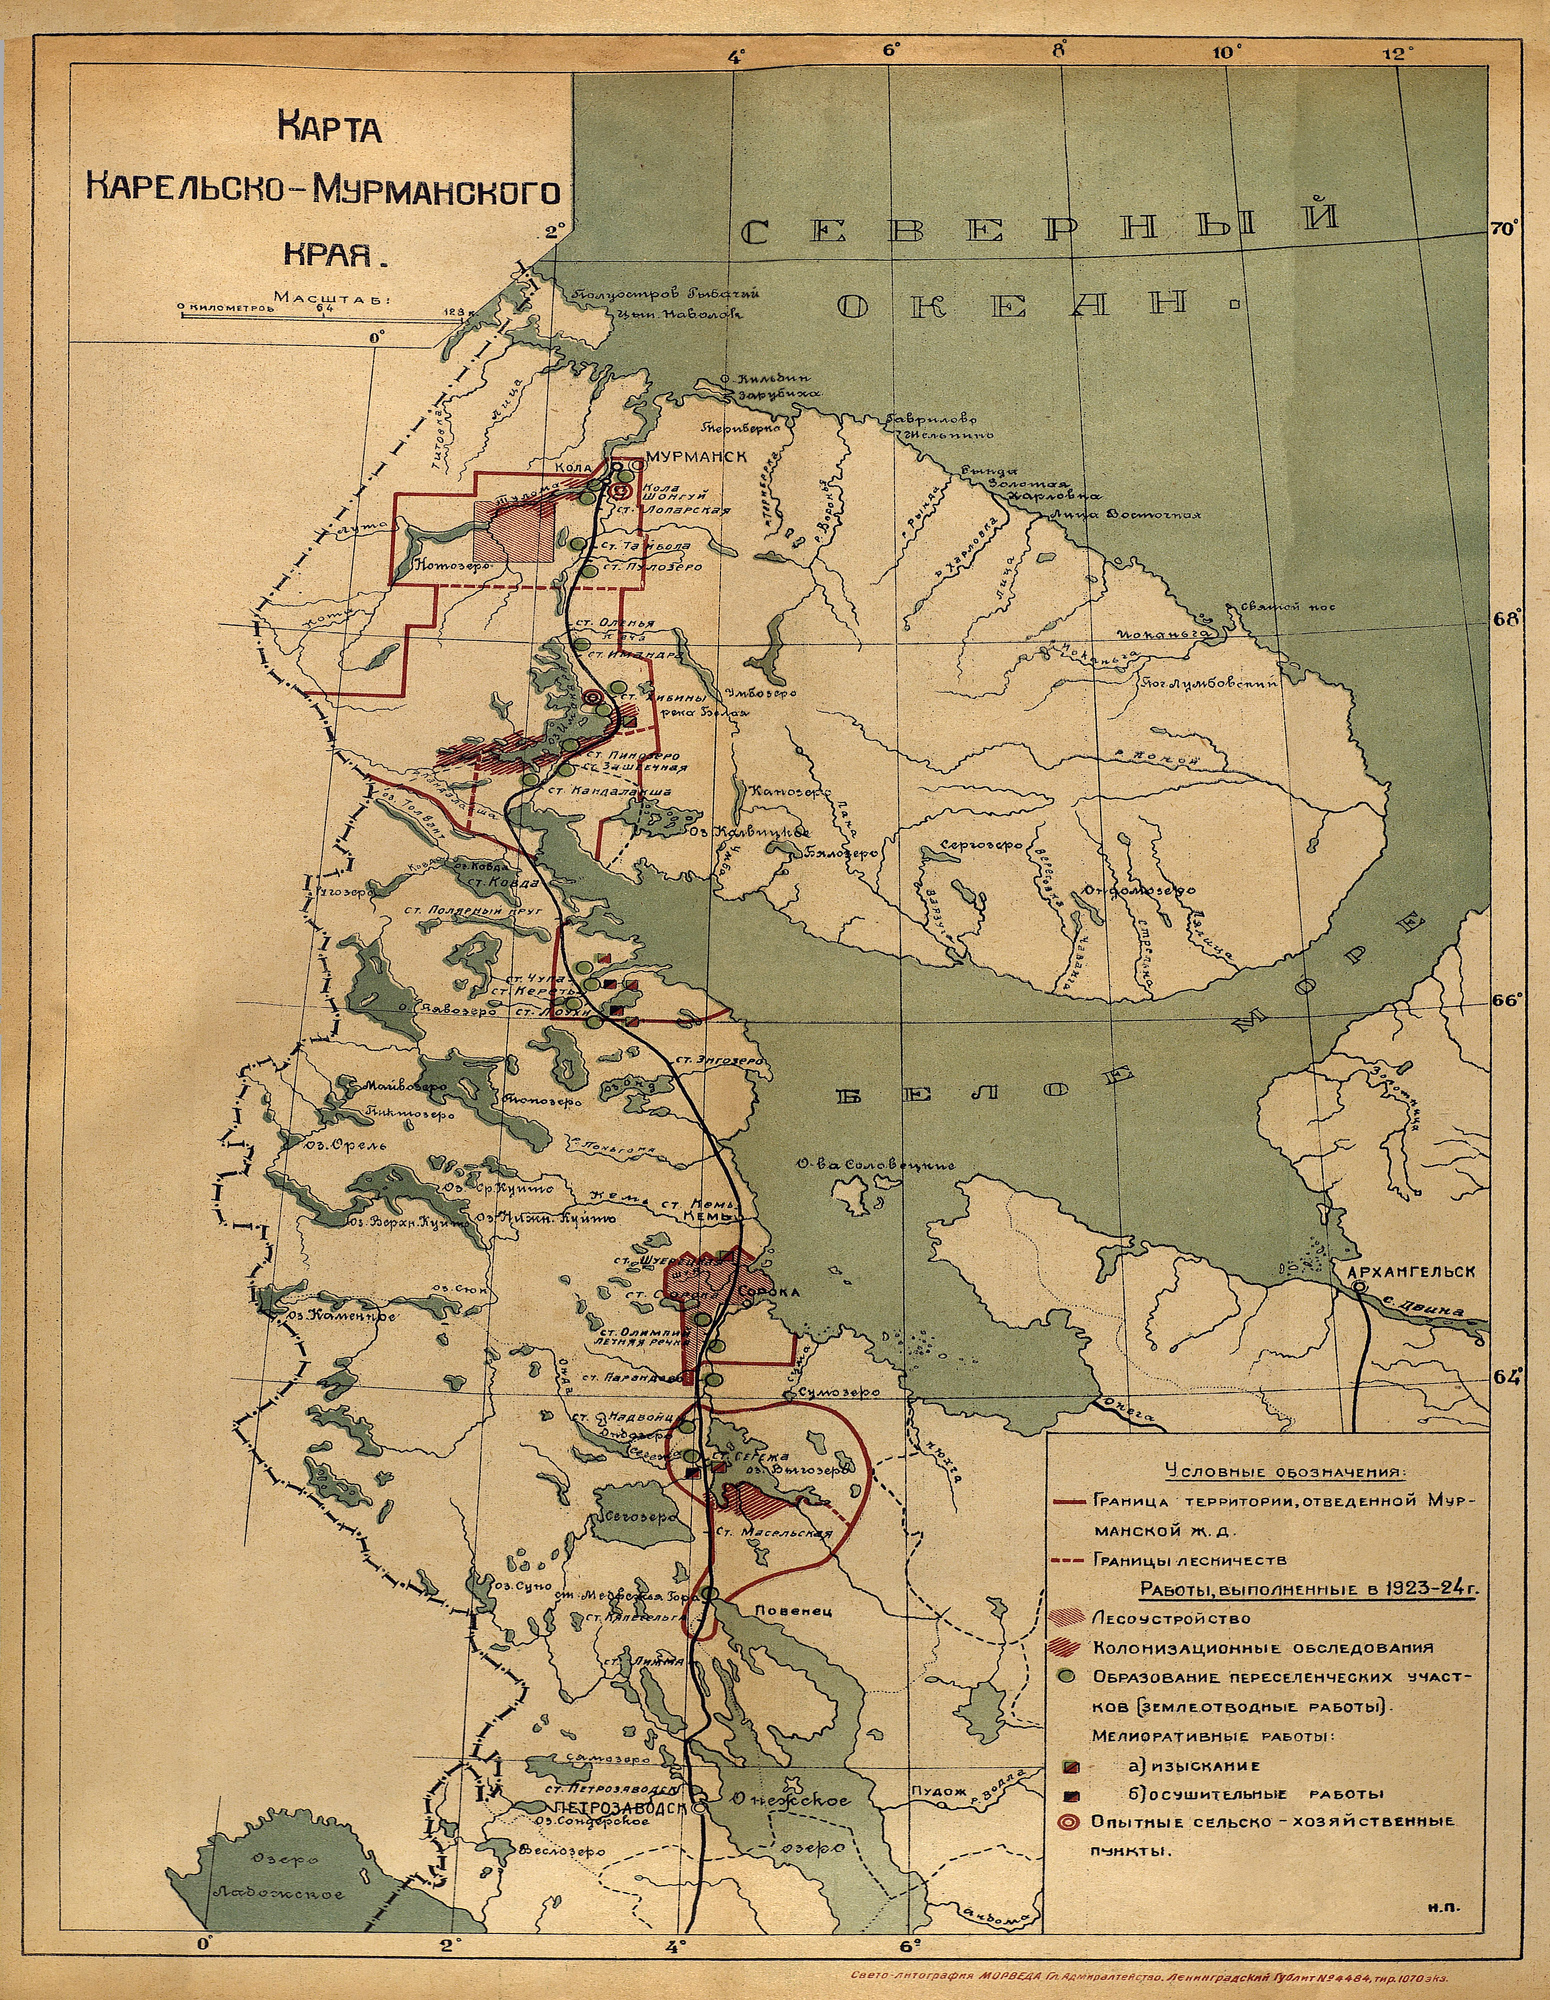 1925 год. Карта Карельско-Мурманского края